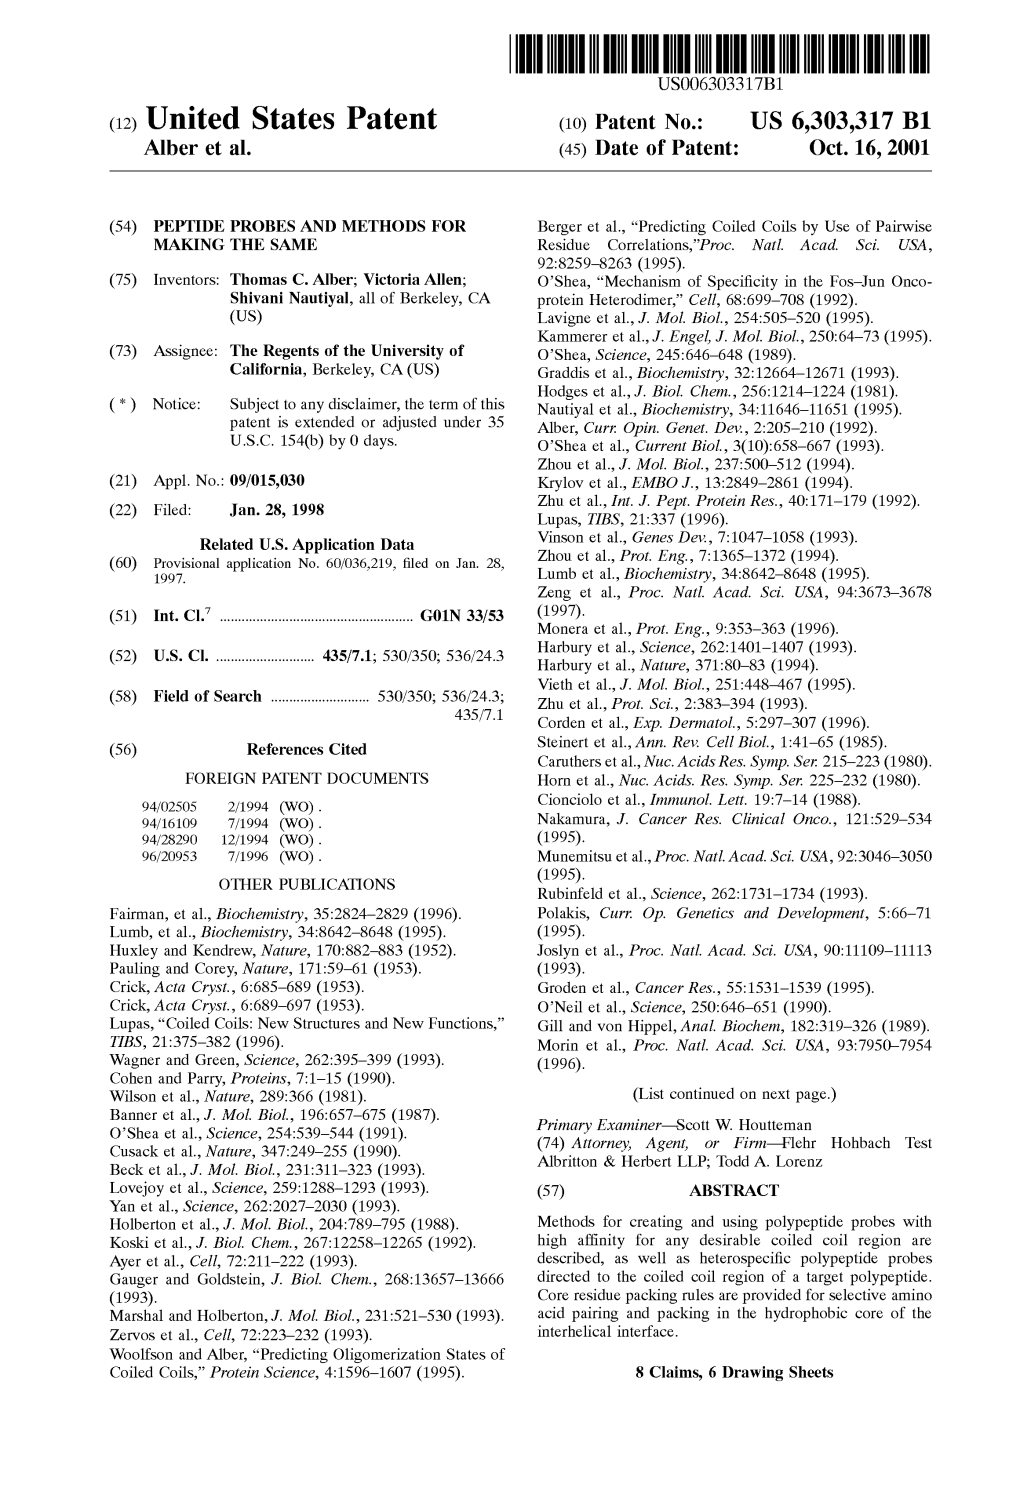 (12) United States Patent (10) Patent No.: US 6,303,317 B1 Alber Et Al